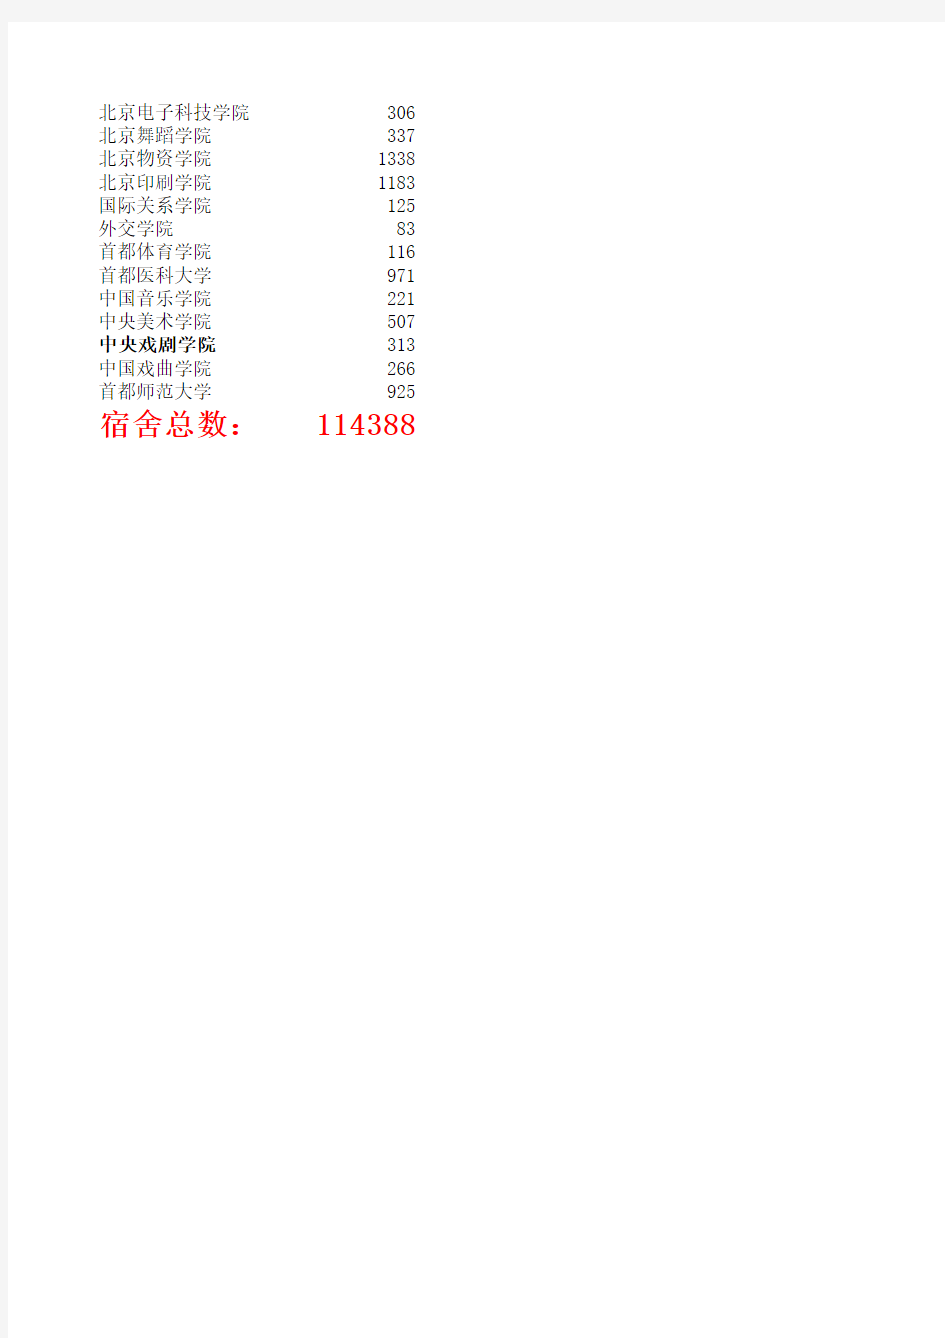 2011年最新北京各大学的学生宿舍数量统计表